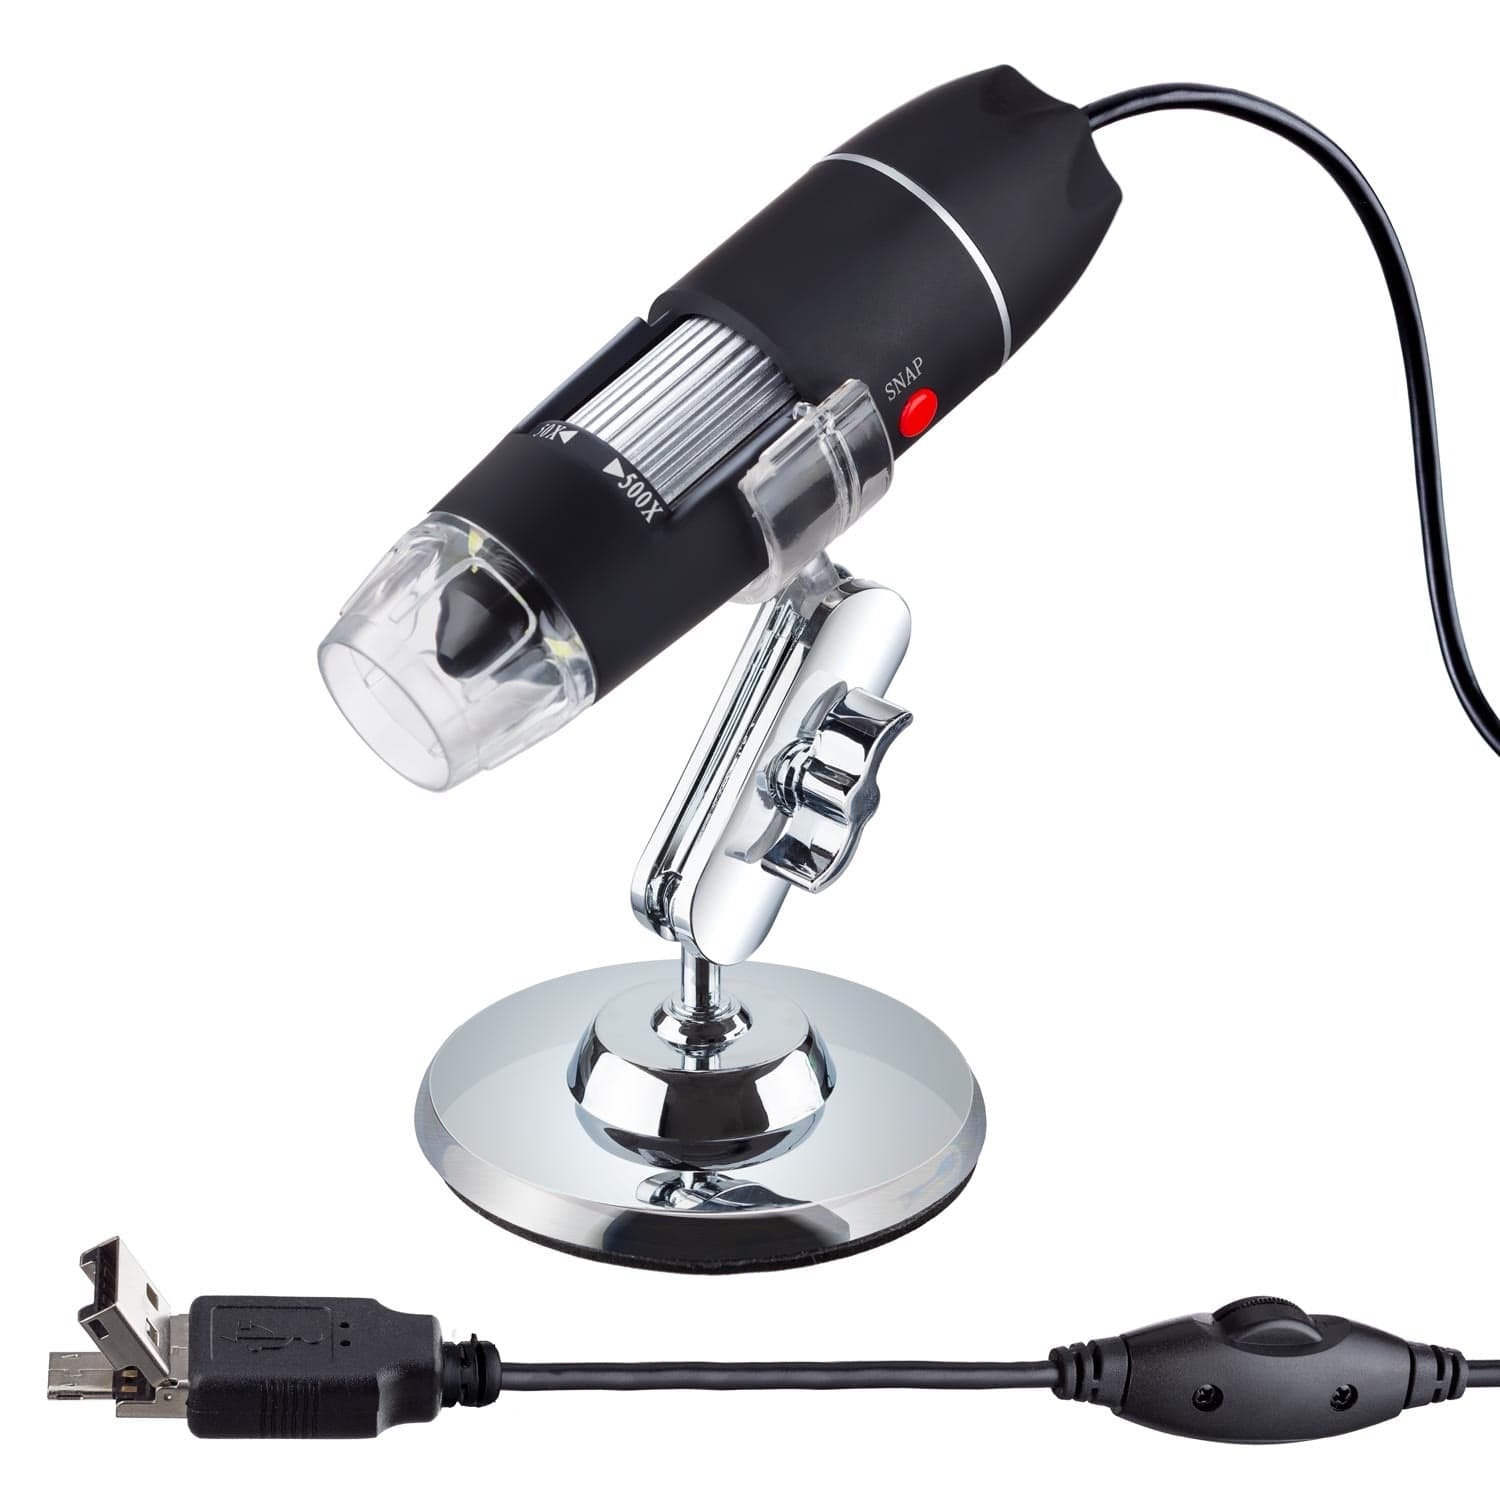 Microscopio digitale portatile LCD 20-500x 5 Mpx